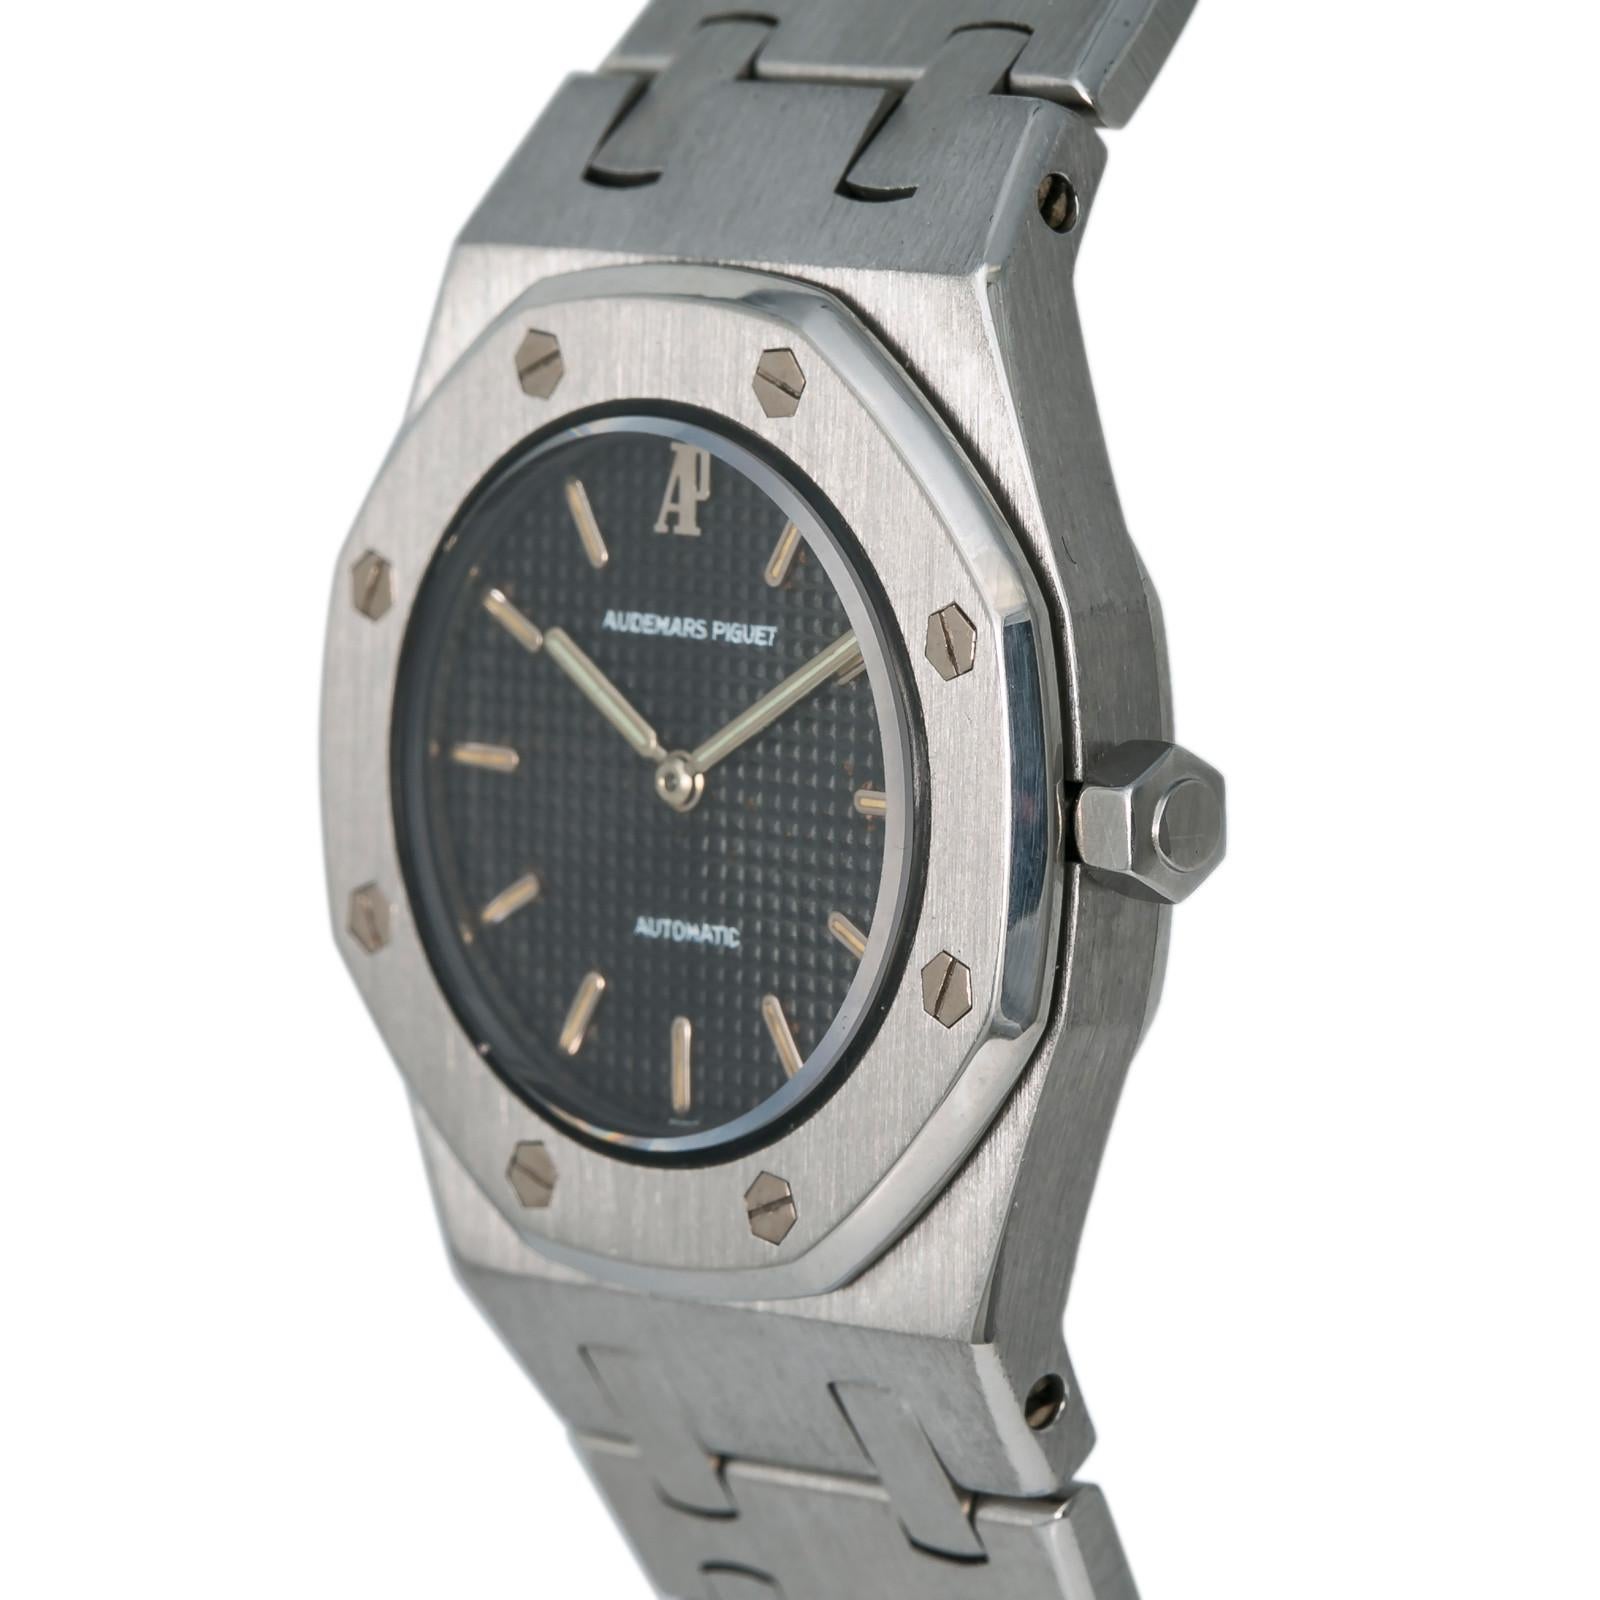 Modern Audemars Piguet Royal Oak 8638ST Women's Automatic Watch Stainless Steel